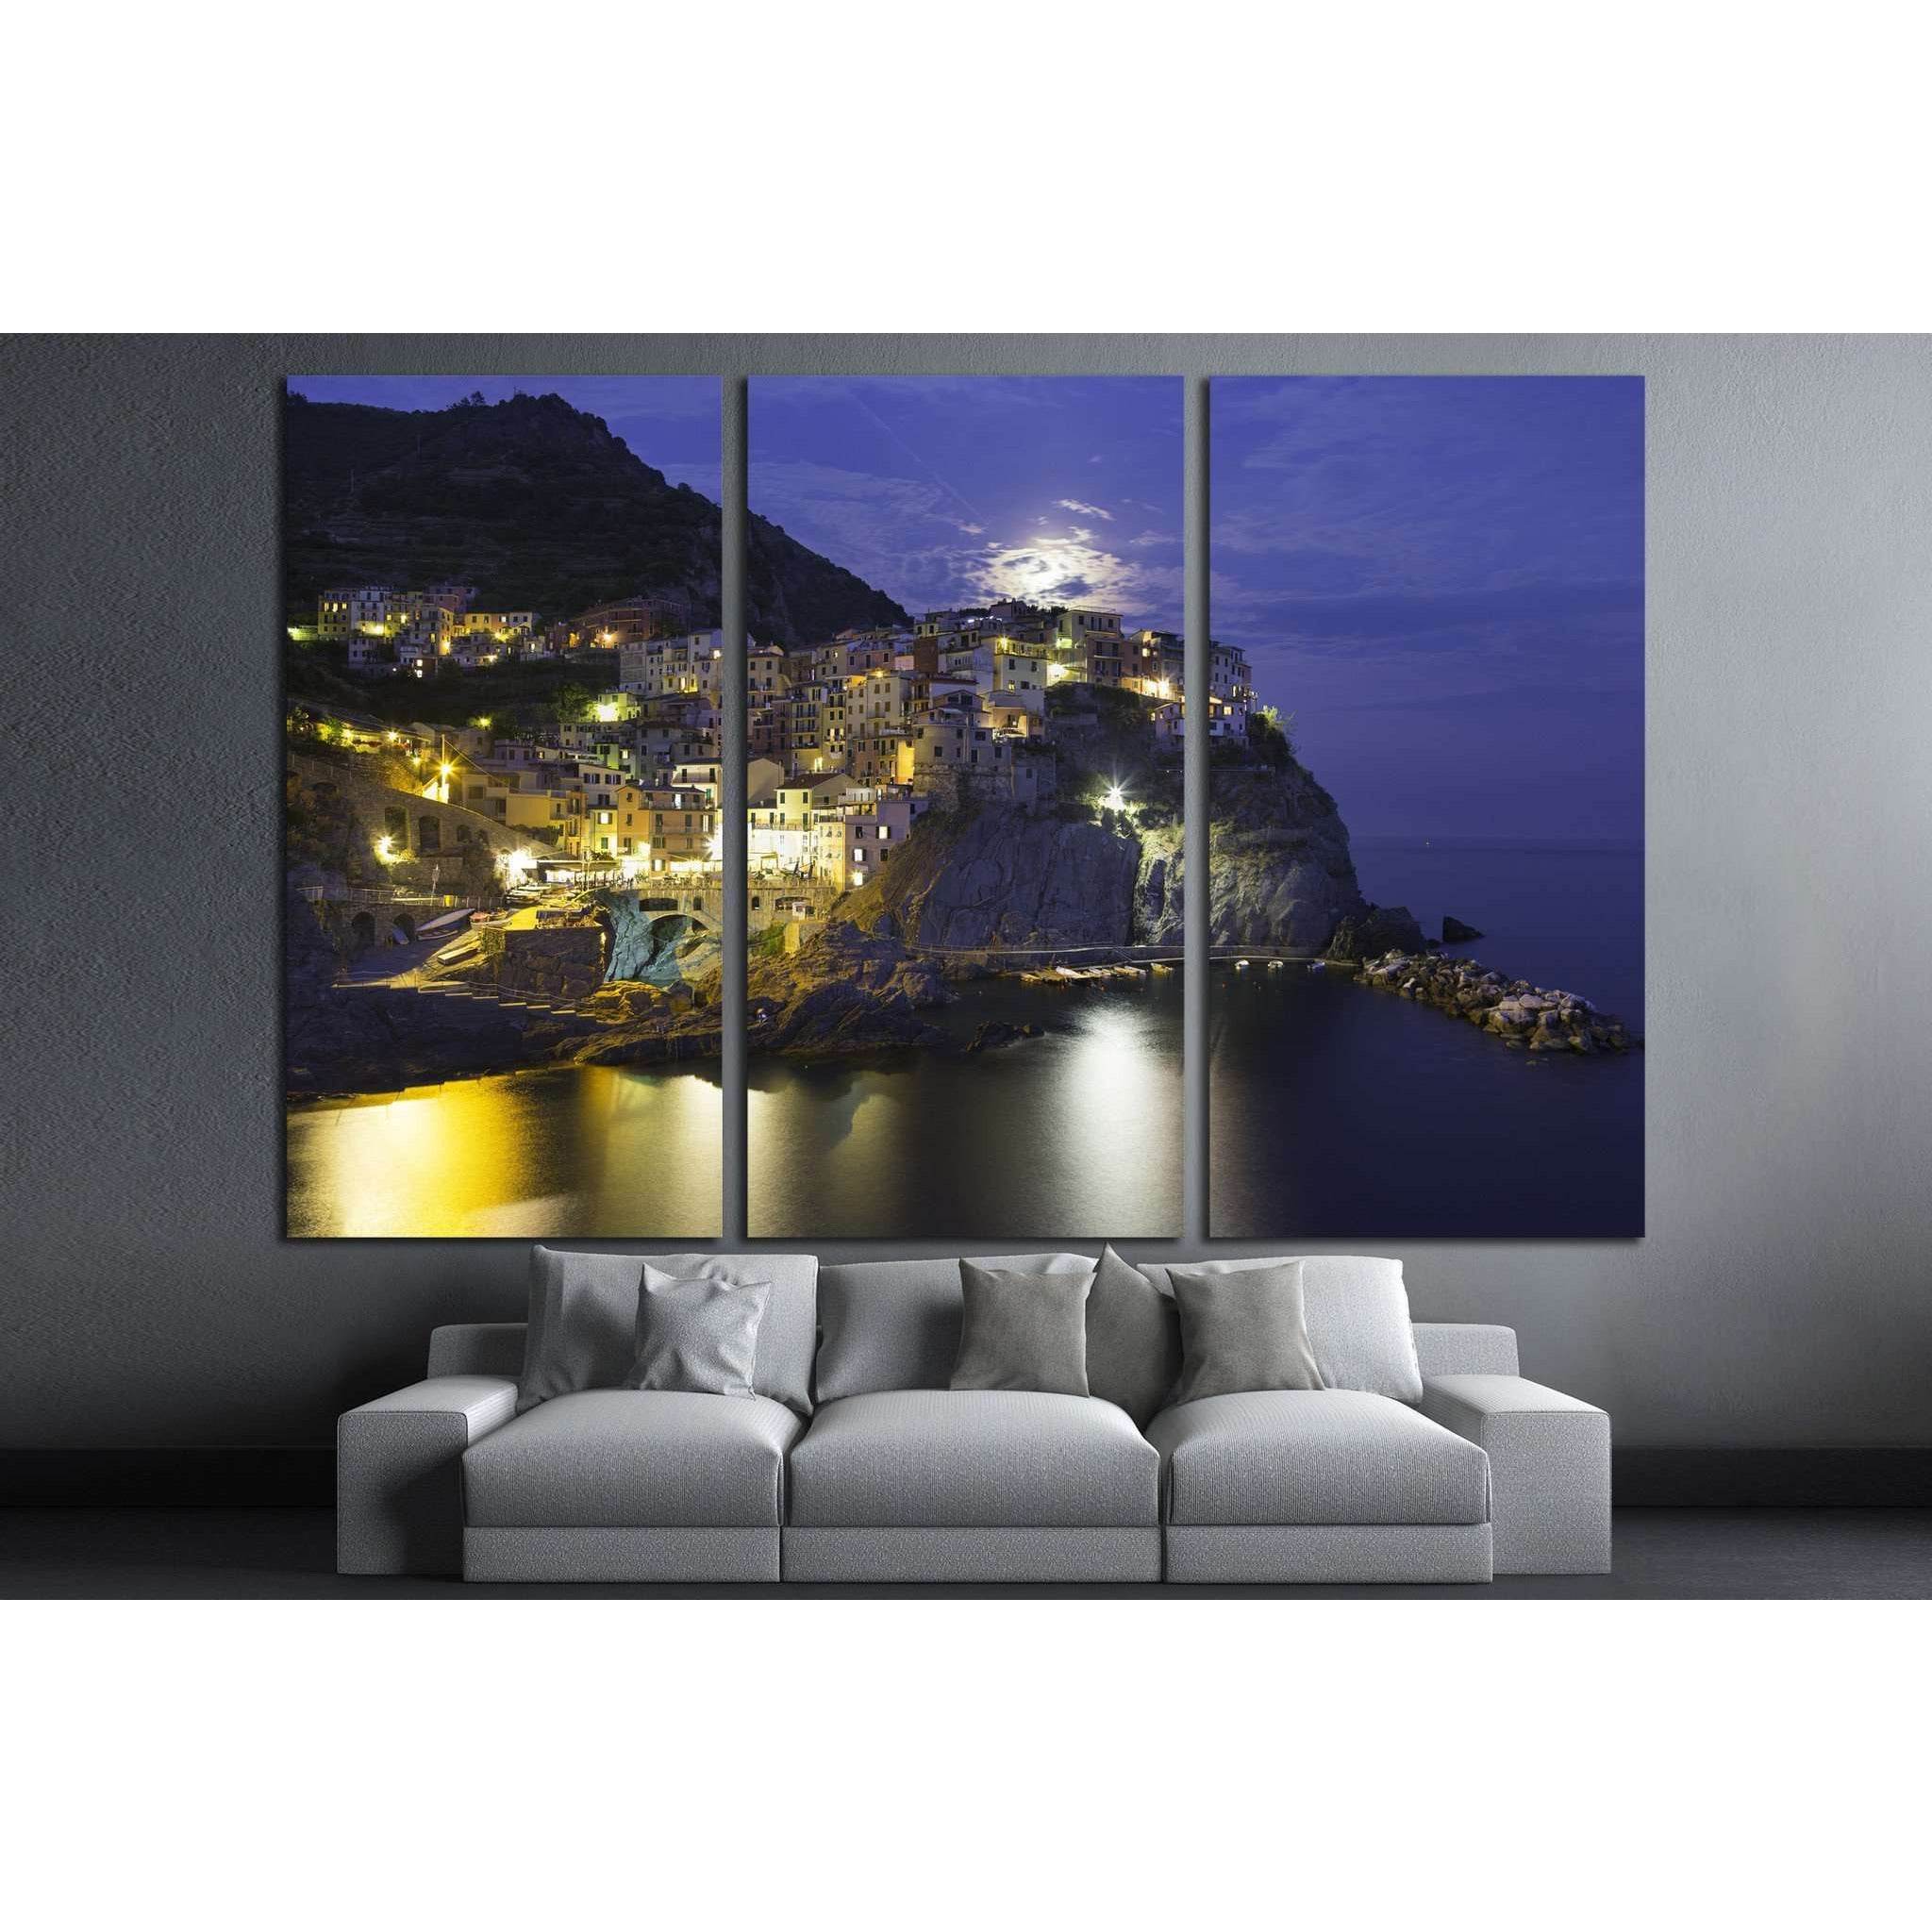 Manarola, Cinque Terre, Italy №1240 Ready to Hang Canvas Print